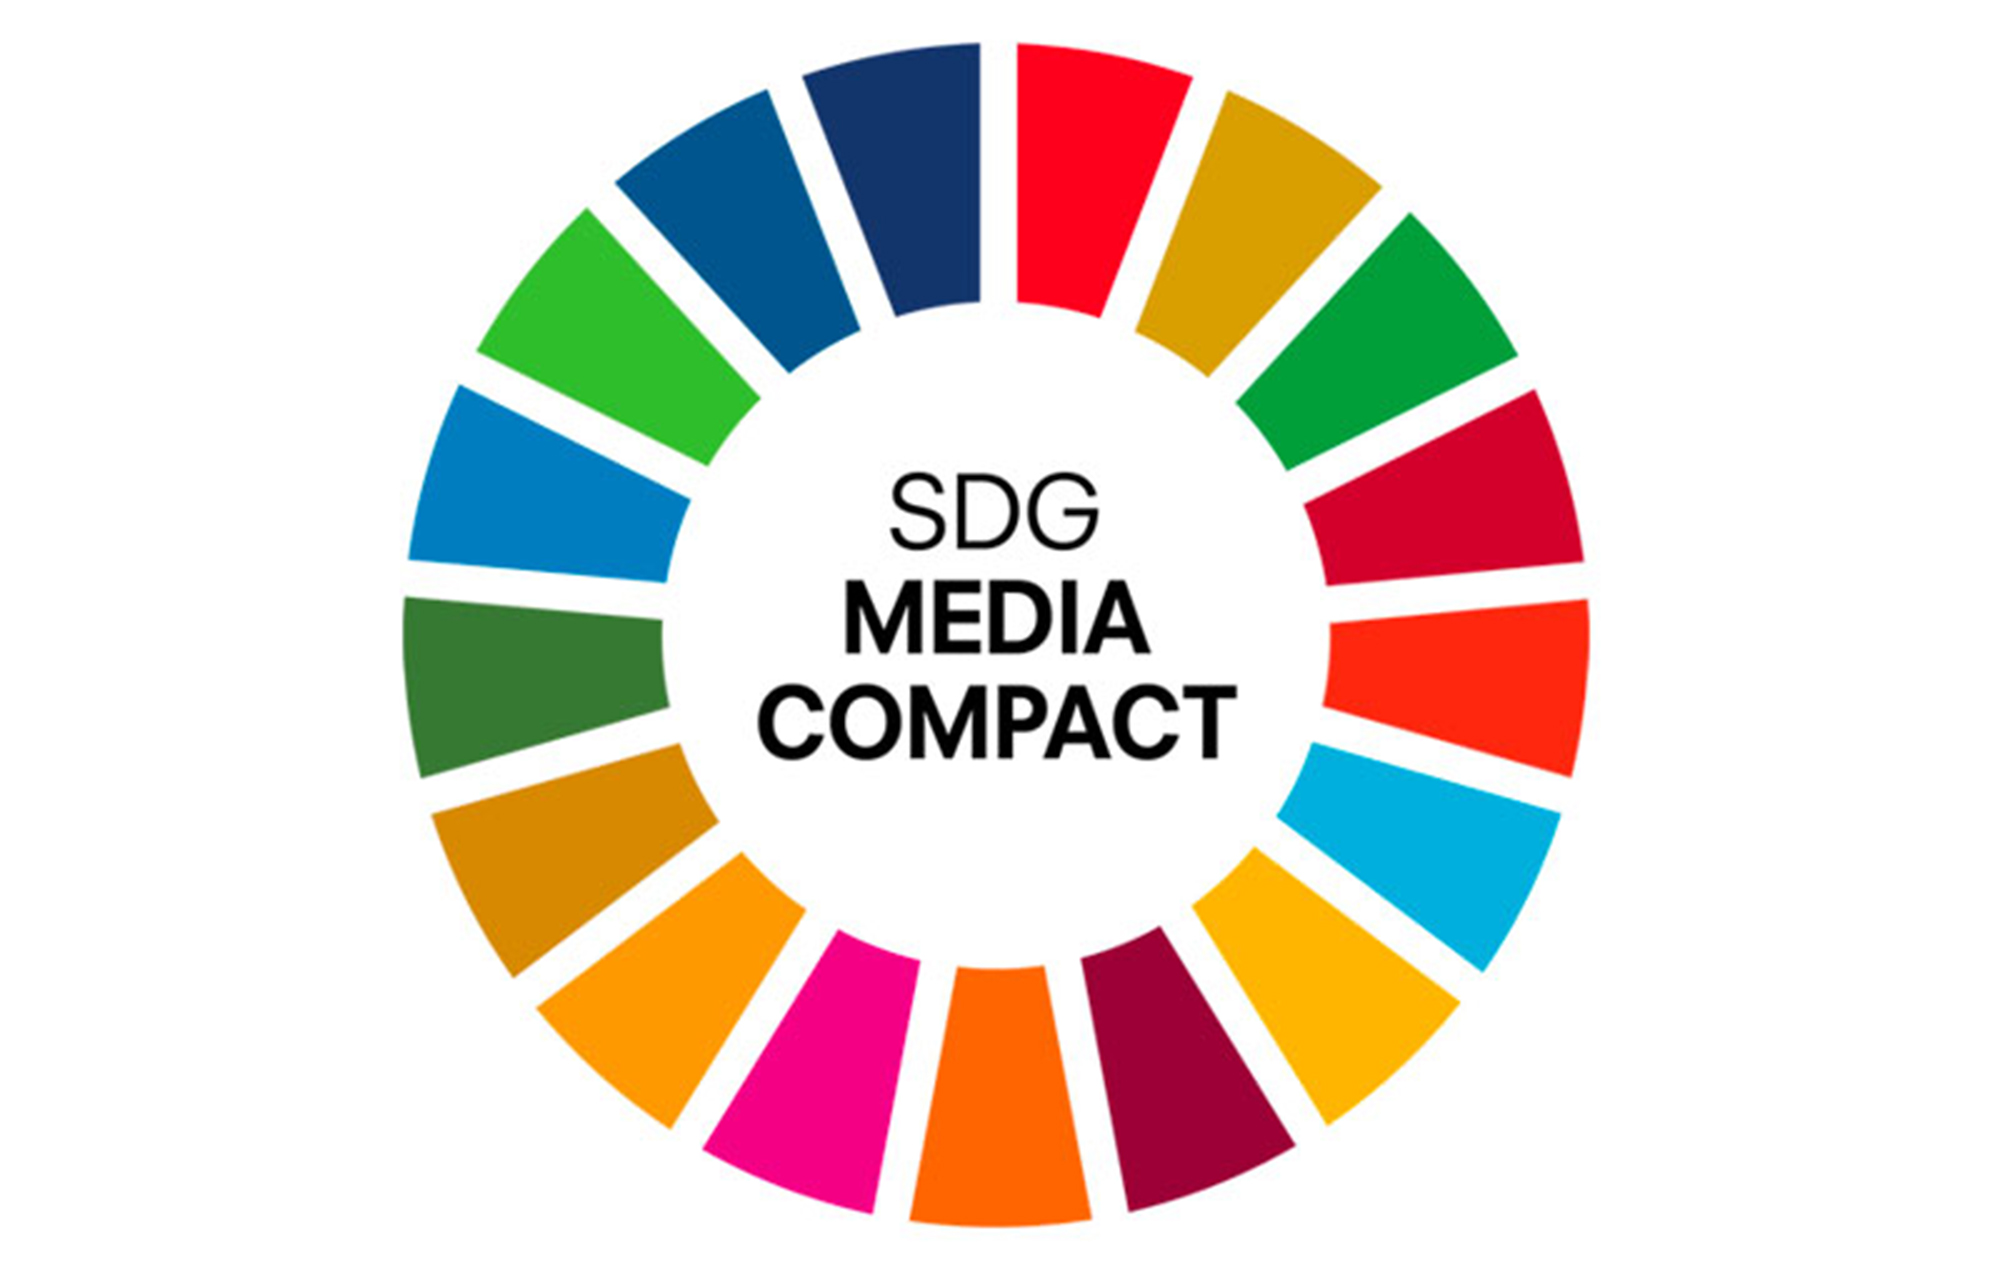 食を専門とするメディア 国内初―― 料理通信社は国連SDGメディア・コンパクトの加盟メディアになりました